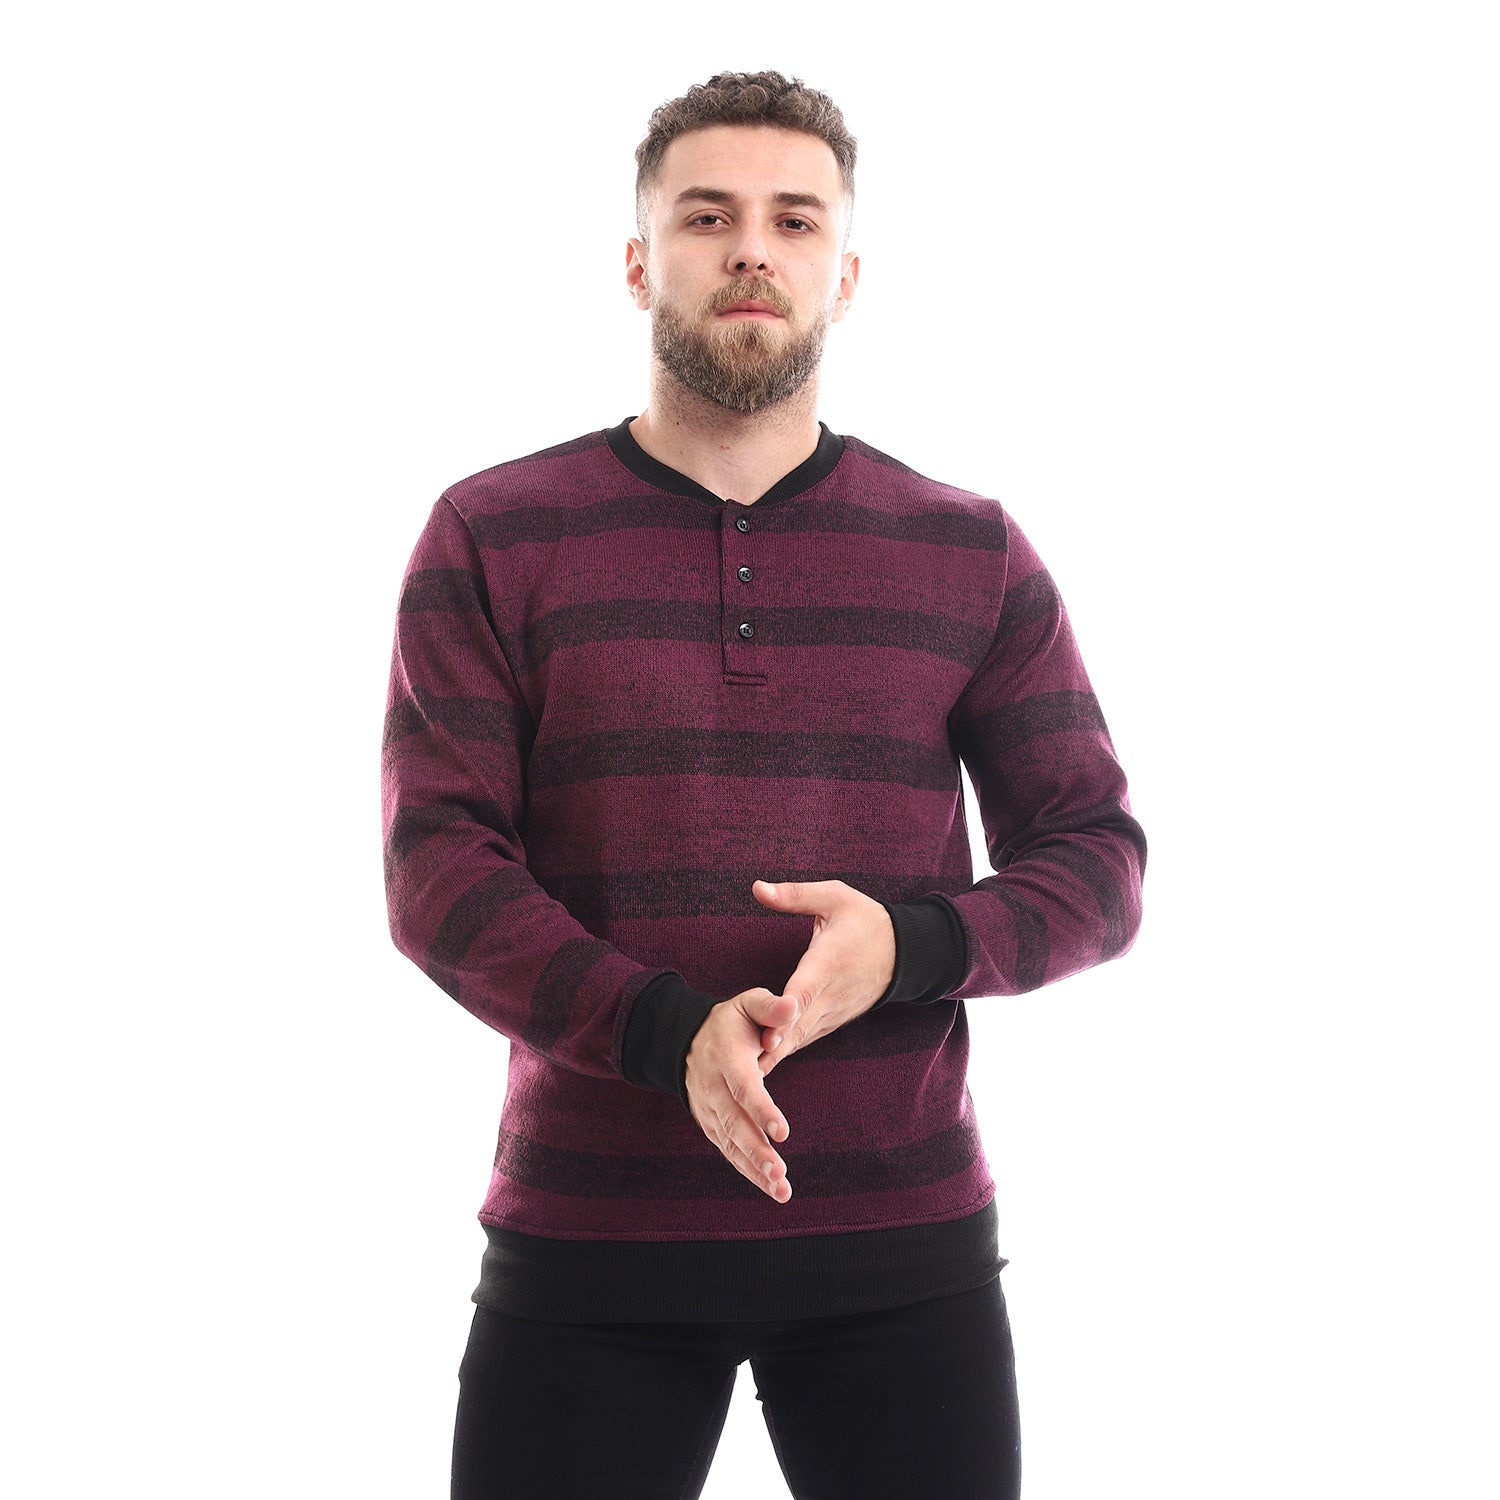 Striped Round Slip On Sweatshirt